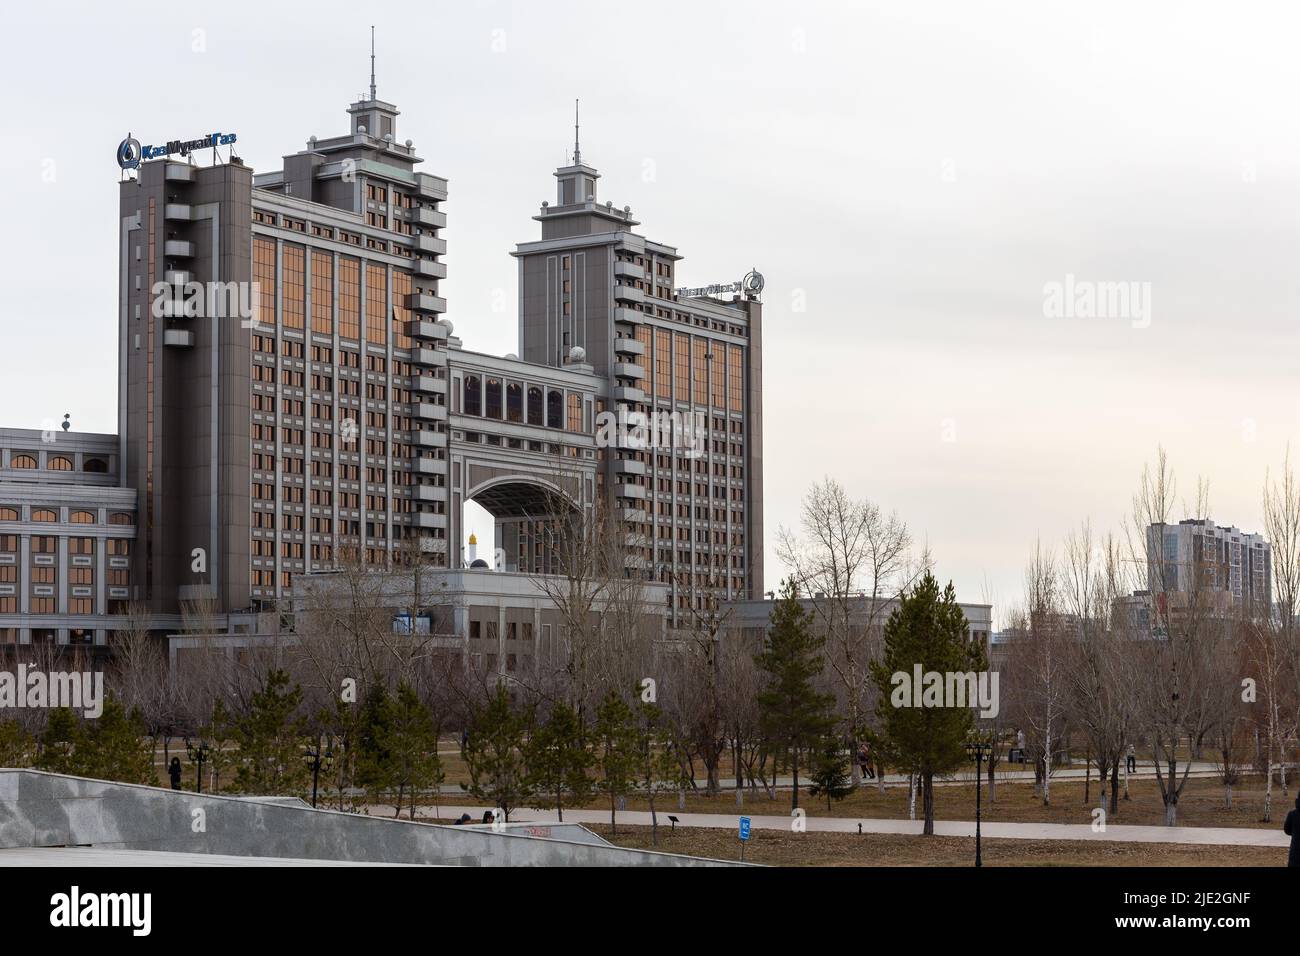 Nur Sultan (Astana), Kazakistan, 11.11.21. Porta monumentale della città, edificio della KazMunayGas JCR National Corporation visto da Lovers Park. Foto Stock